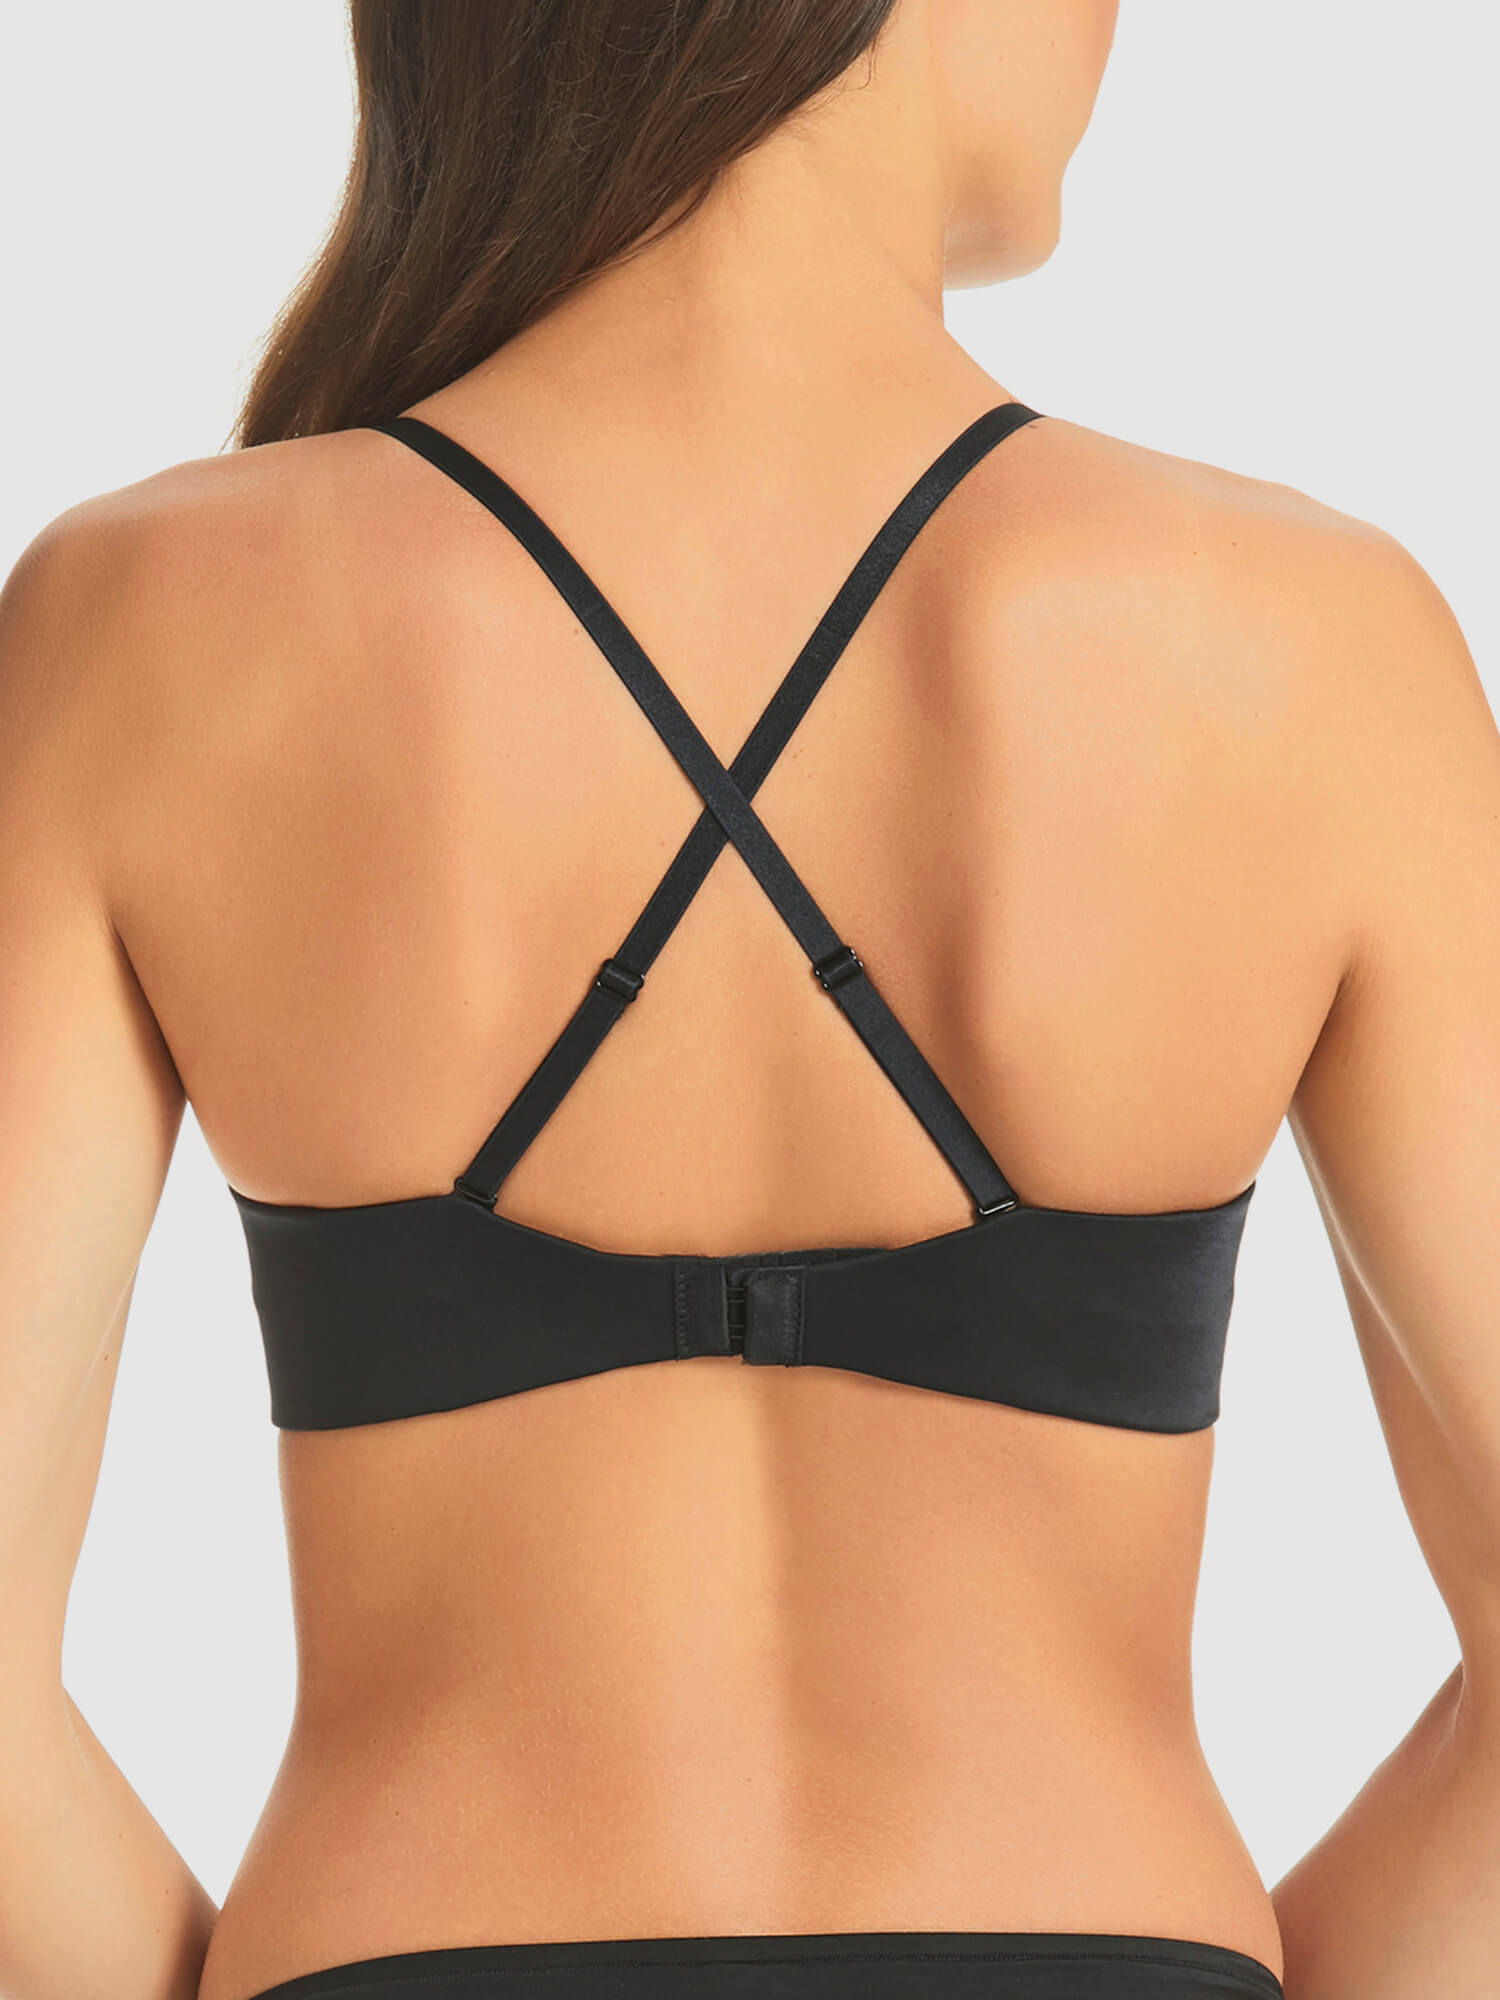 Finelines Refined Backless Bodysuit - Black - Curvy Bras